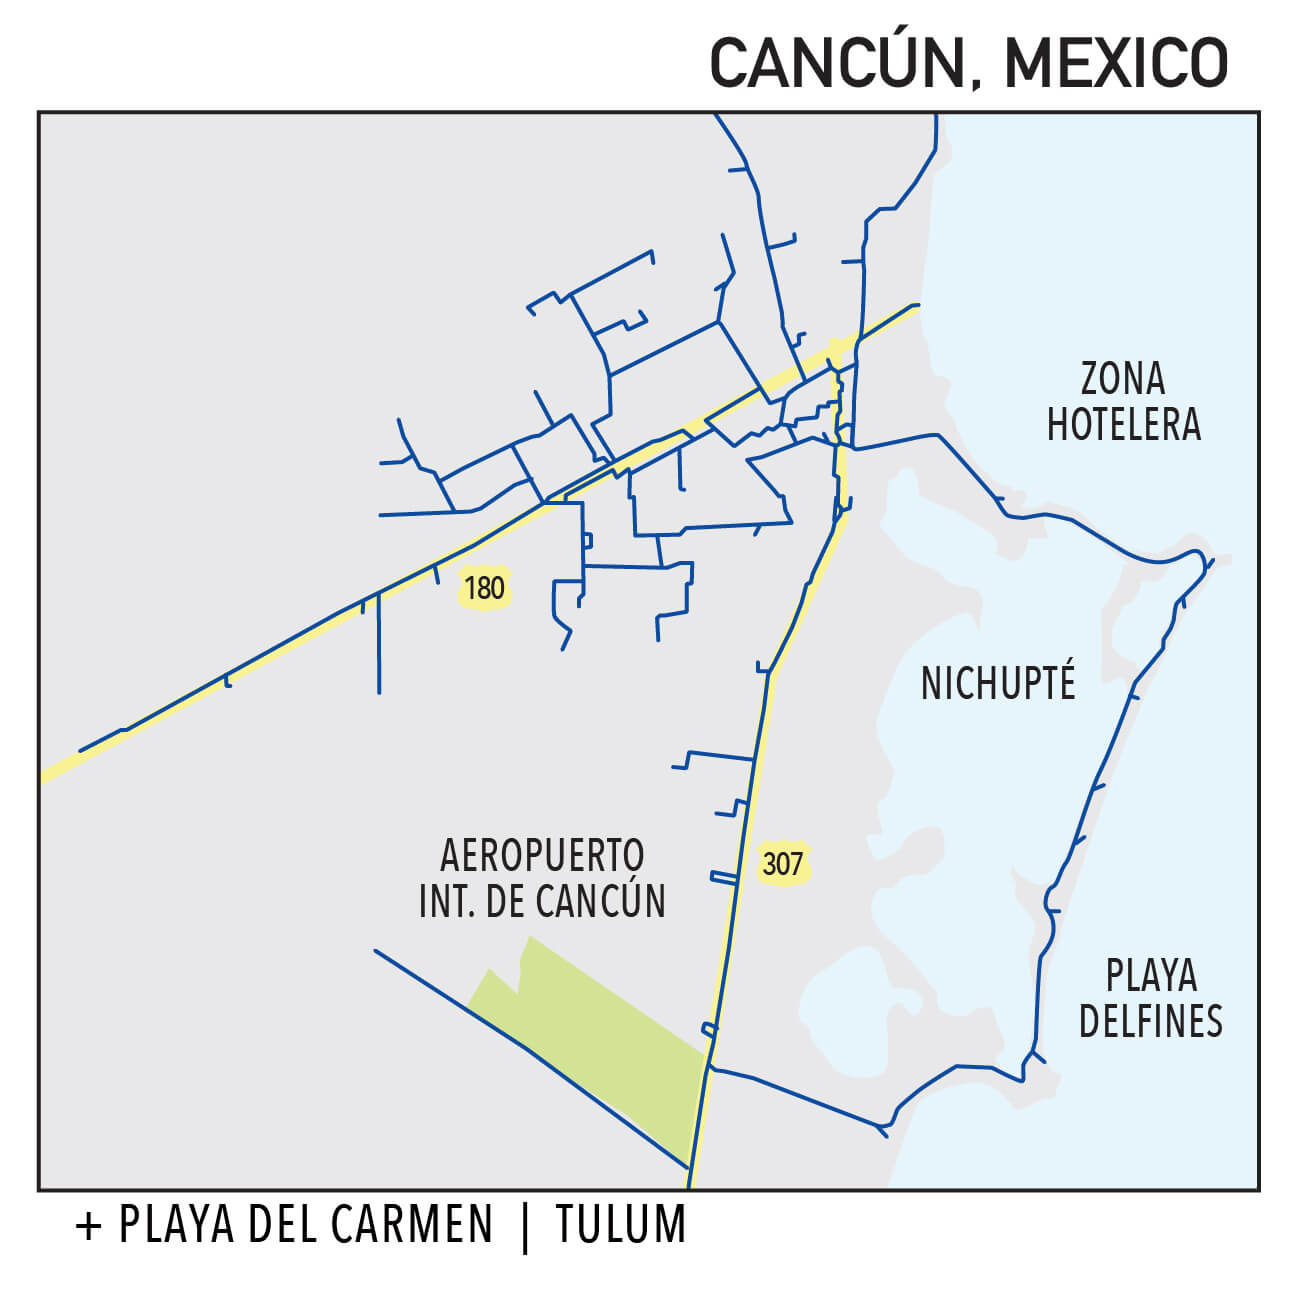 Capillarity Mexico map Ufinet